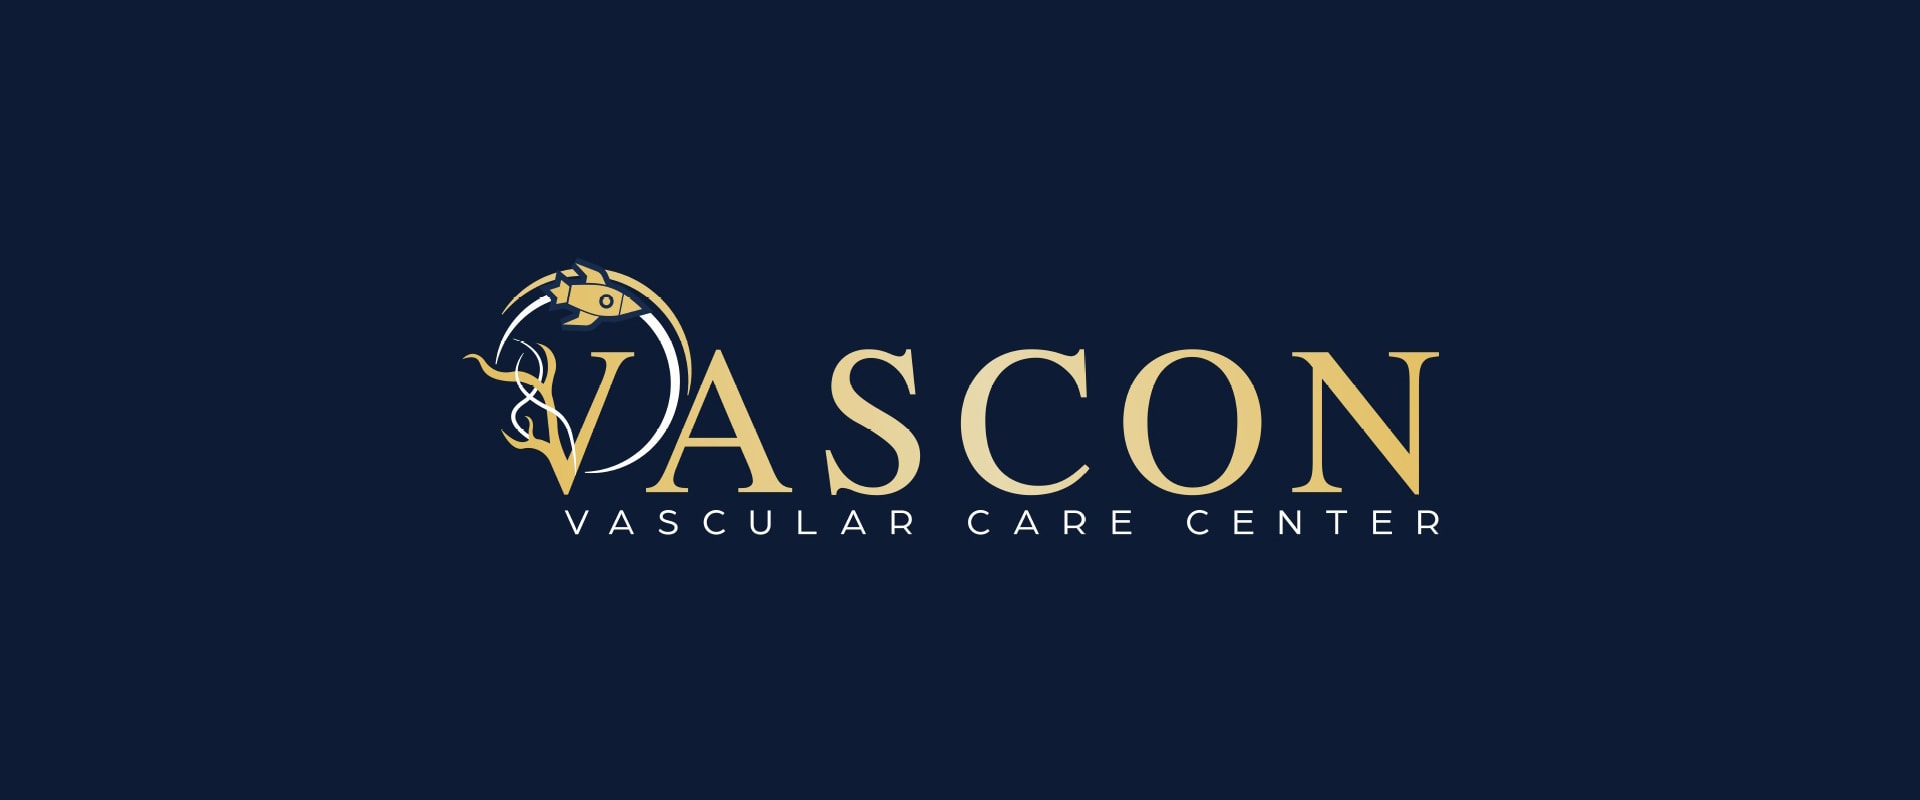 VASCON Vascular Care Center